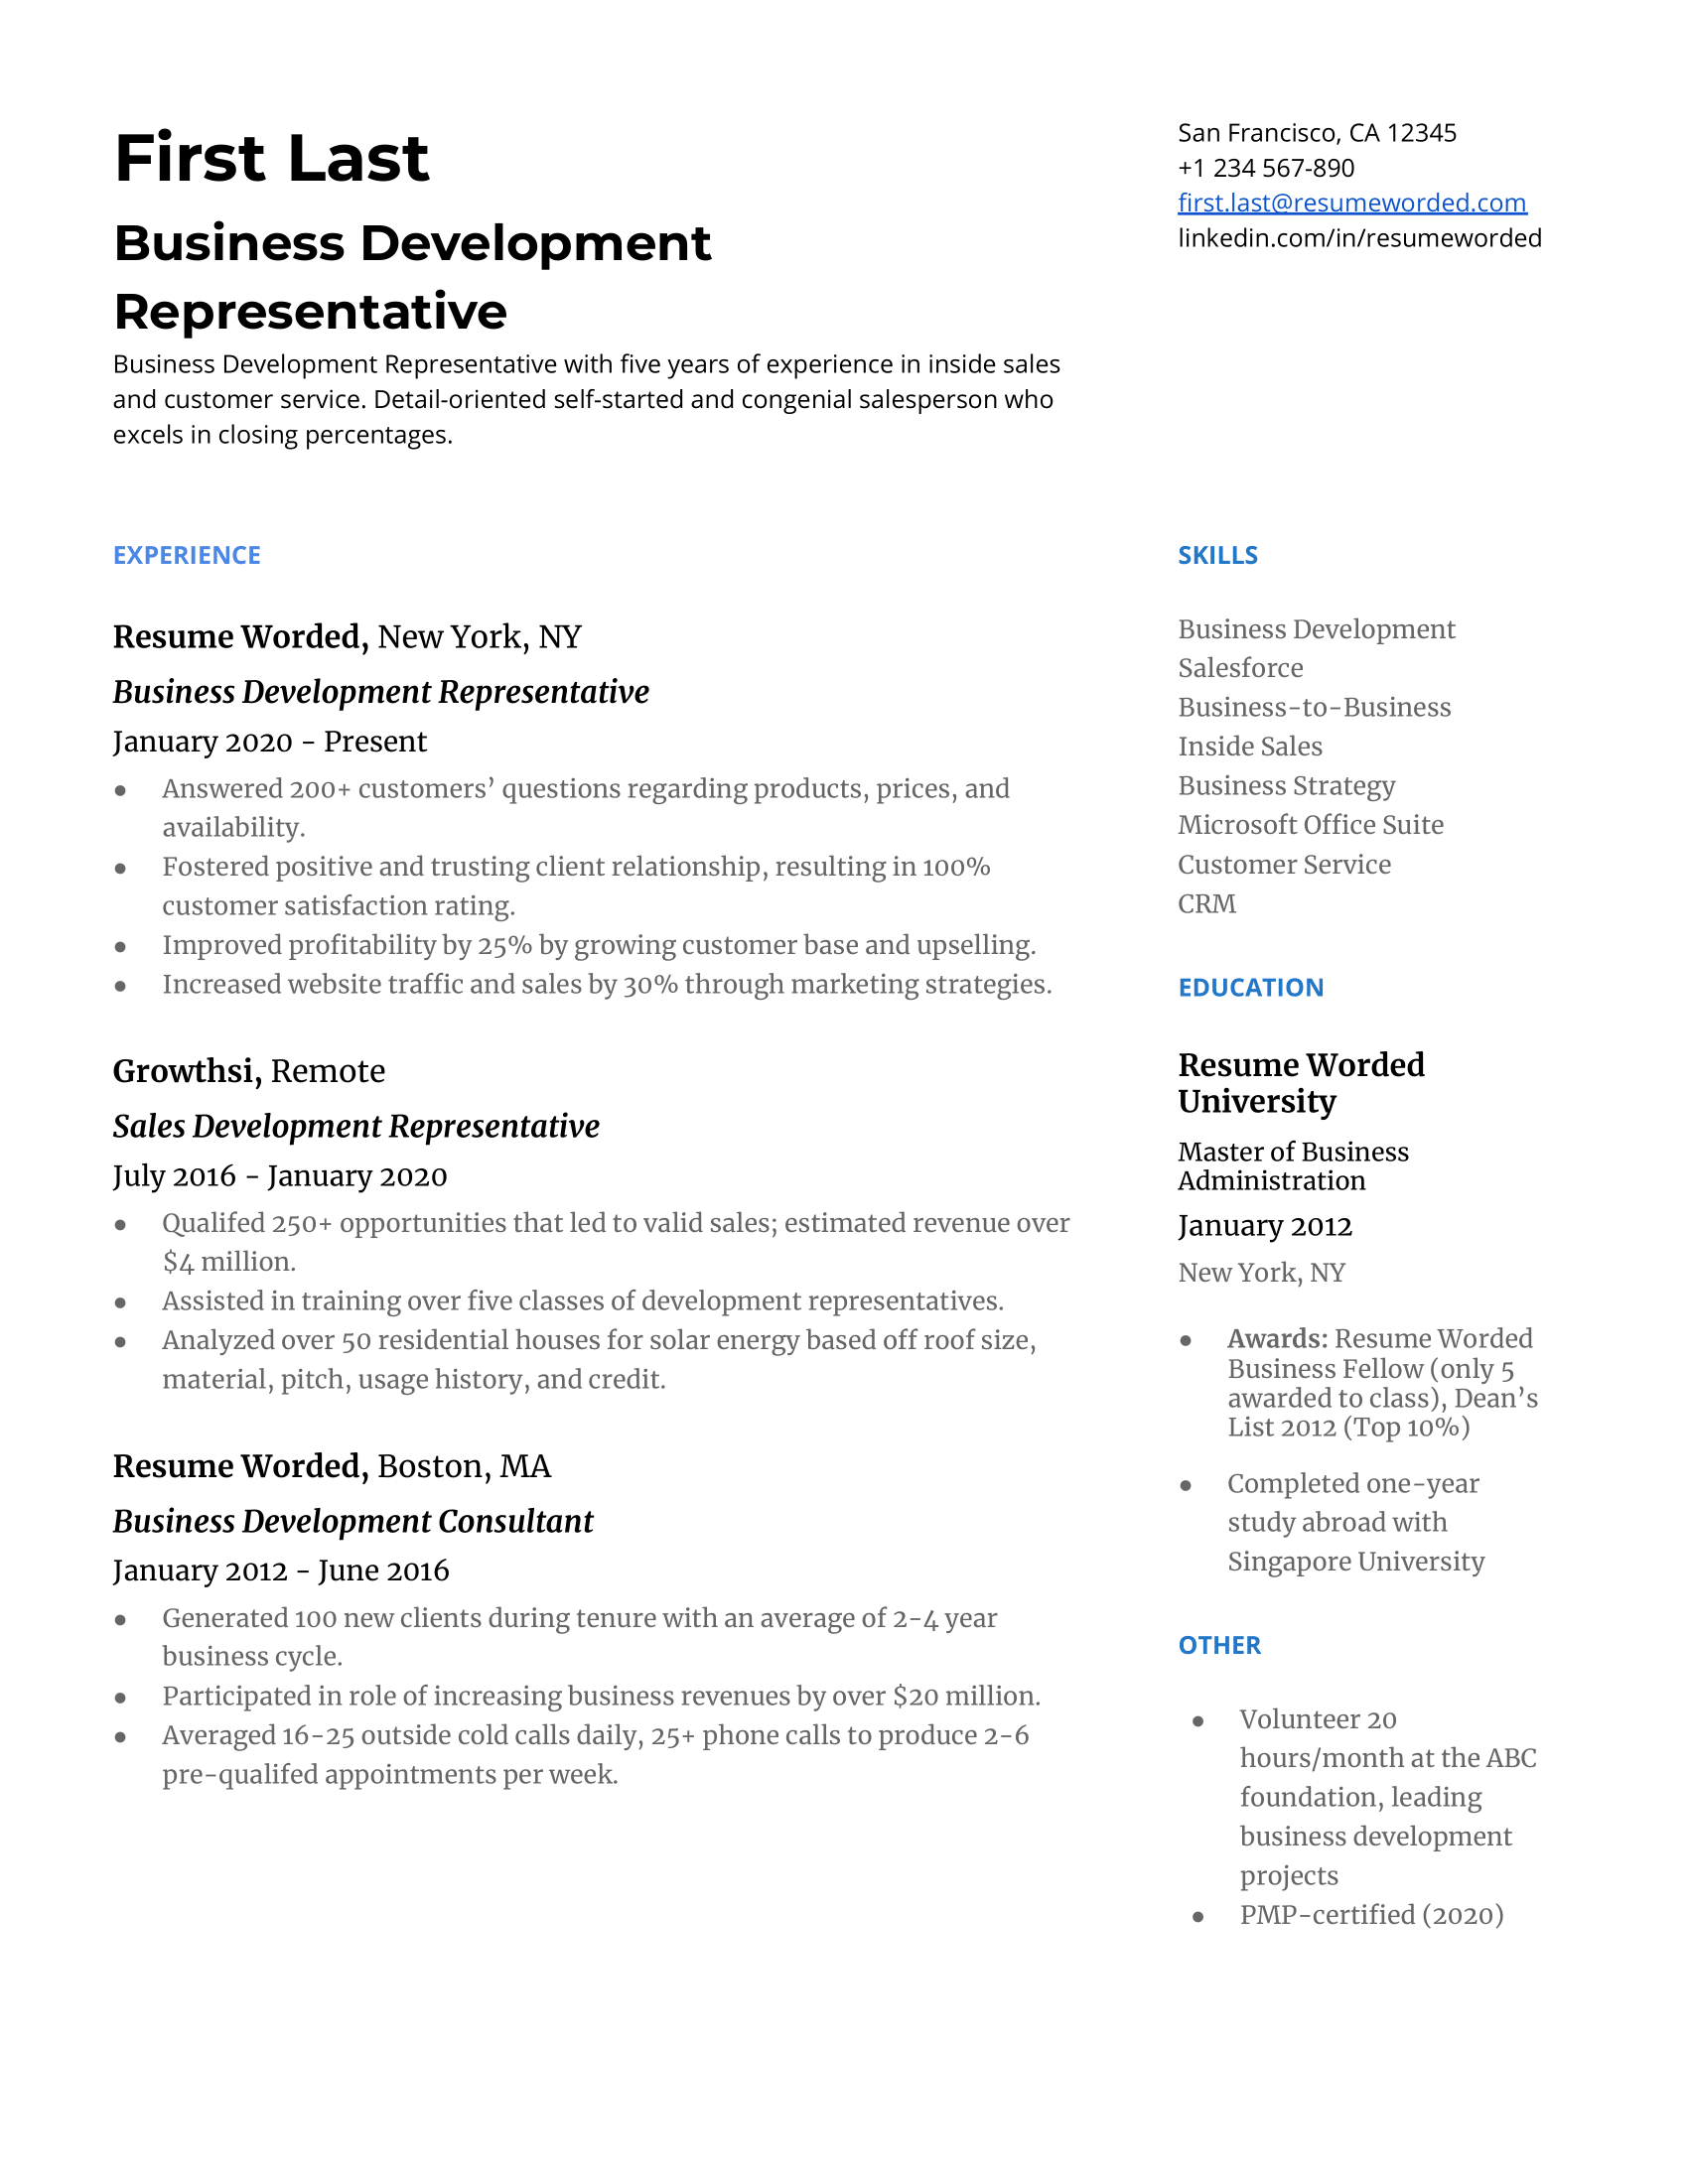 Close-up screenshot of a CV for a Business Development Representative.